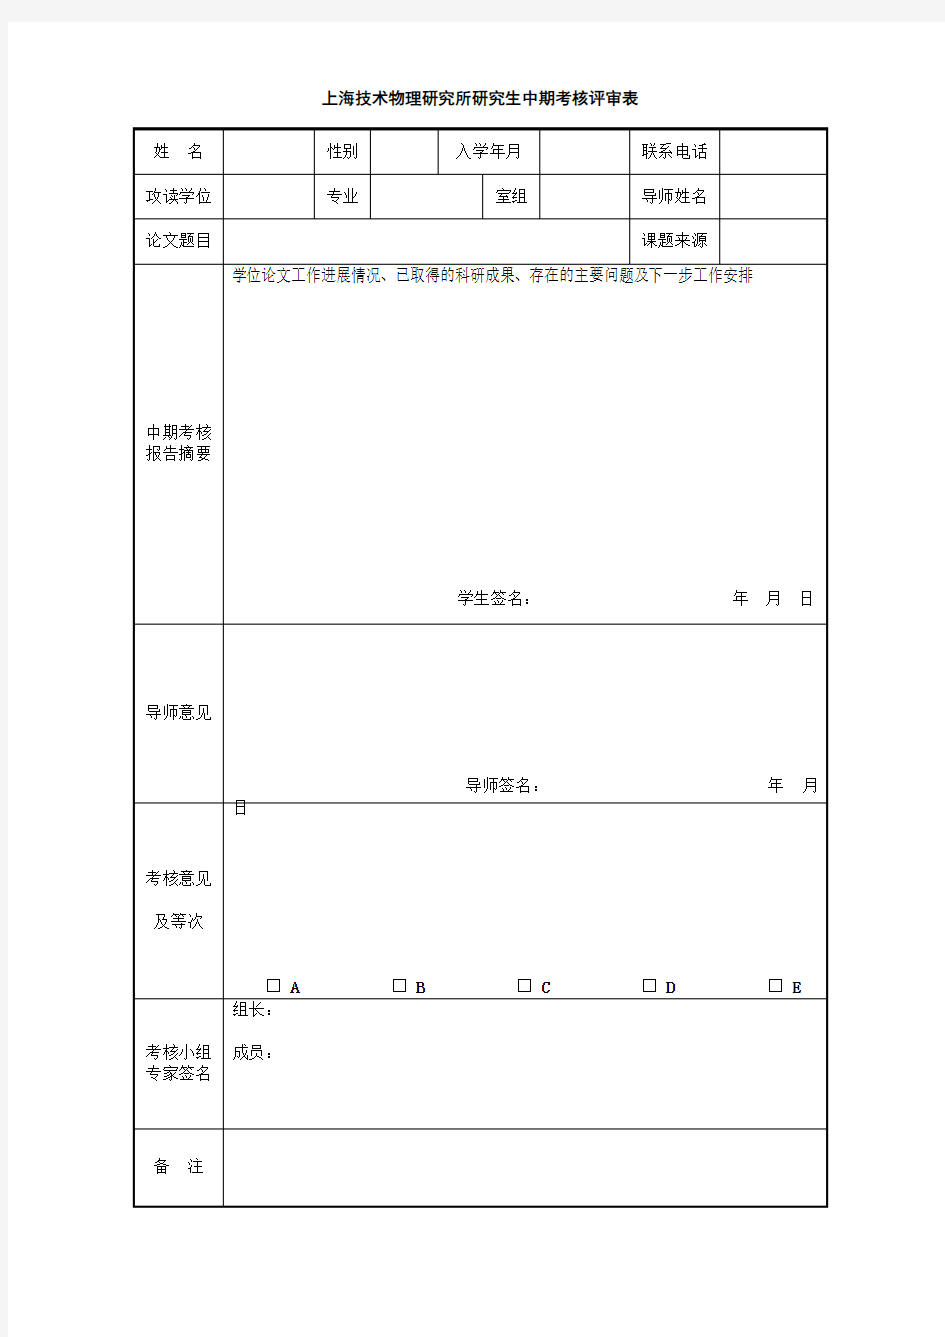 上海技术物理研究所研究生中期考核评审表【模板】